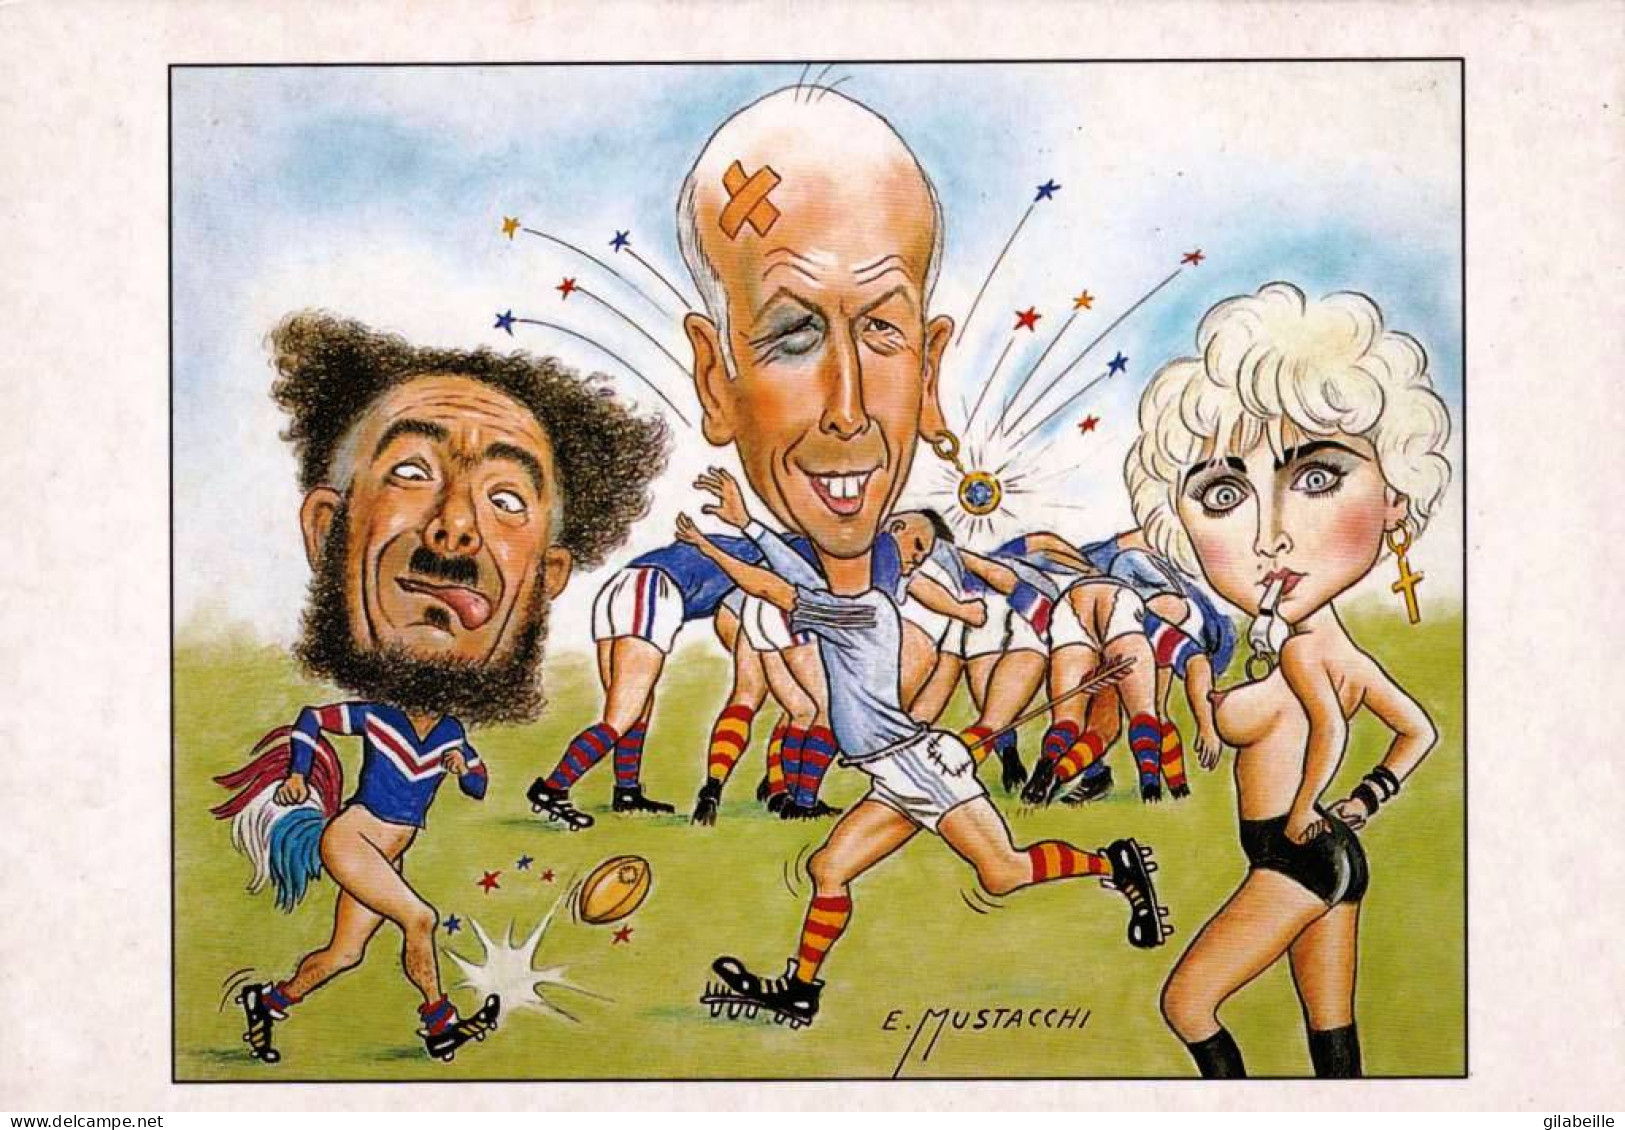  Illustrateur - Giscard D'Estaing Jouant Au Rugby Par Le Dessinateur E.MUSTACCHI - Unclassified